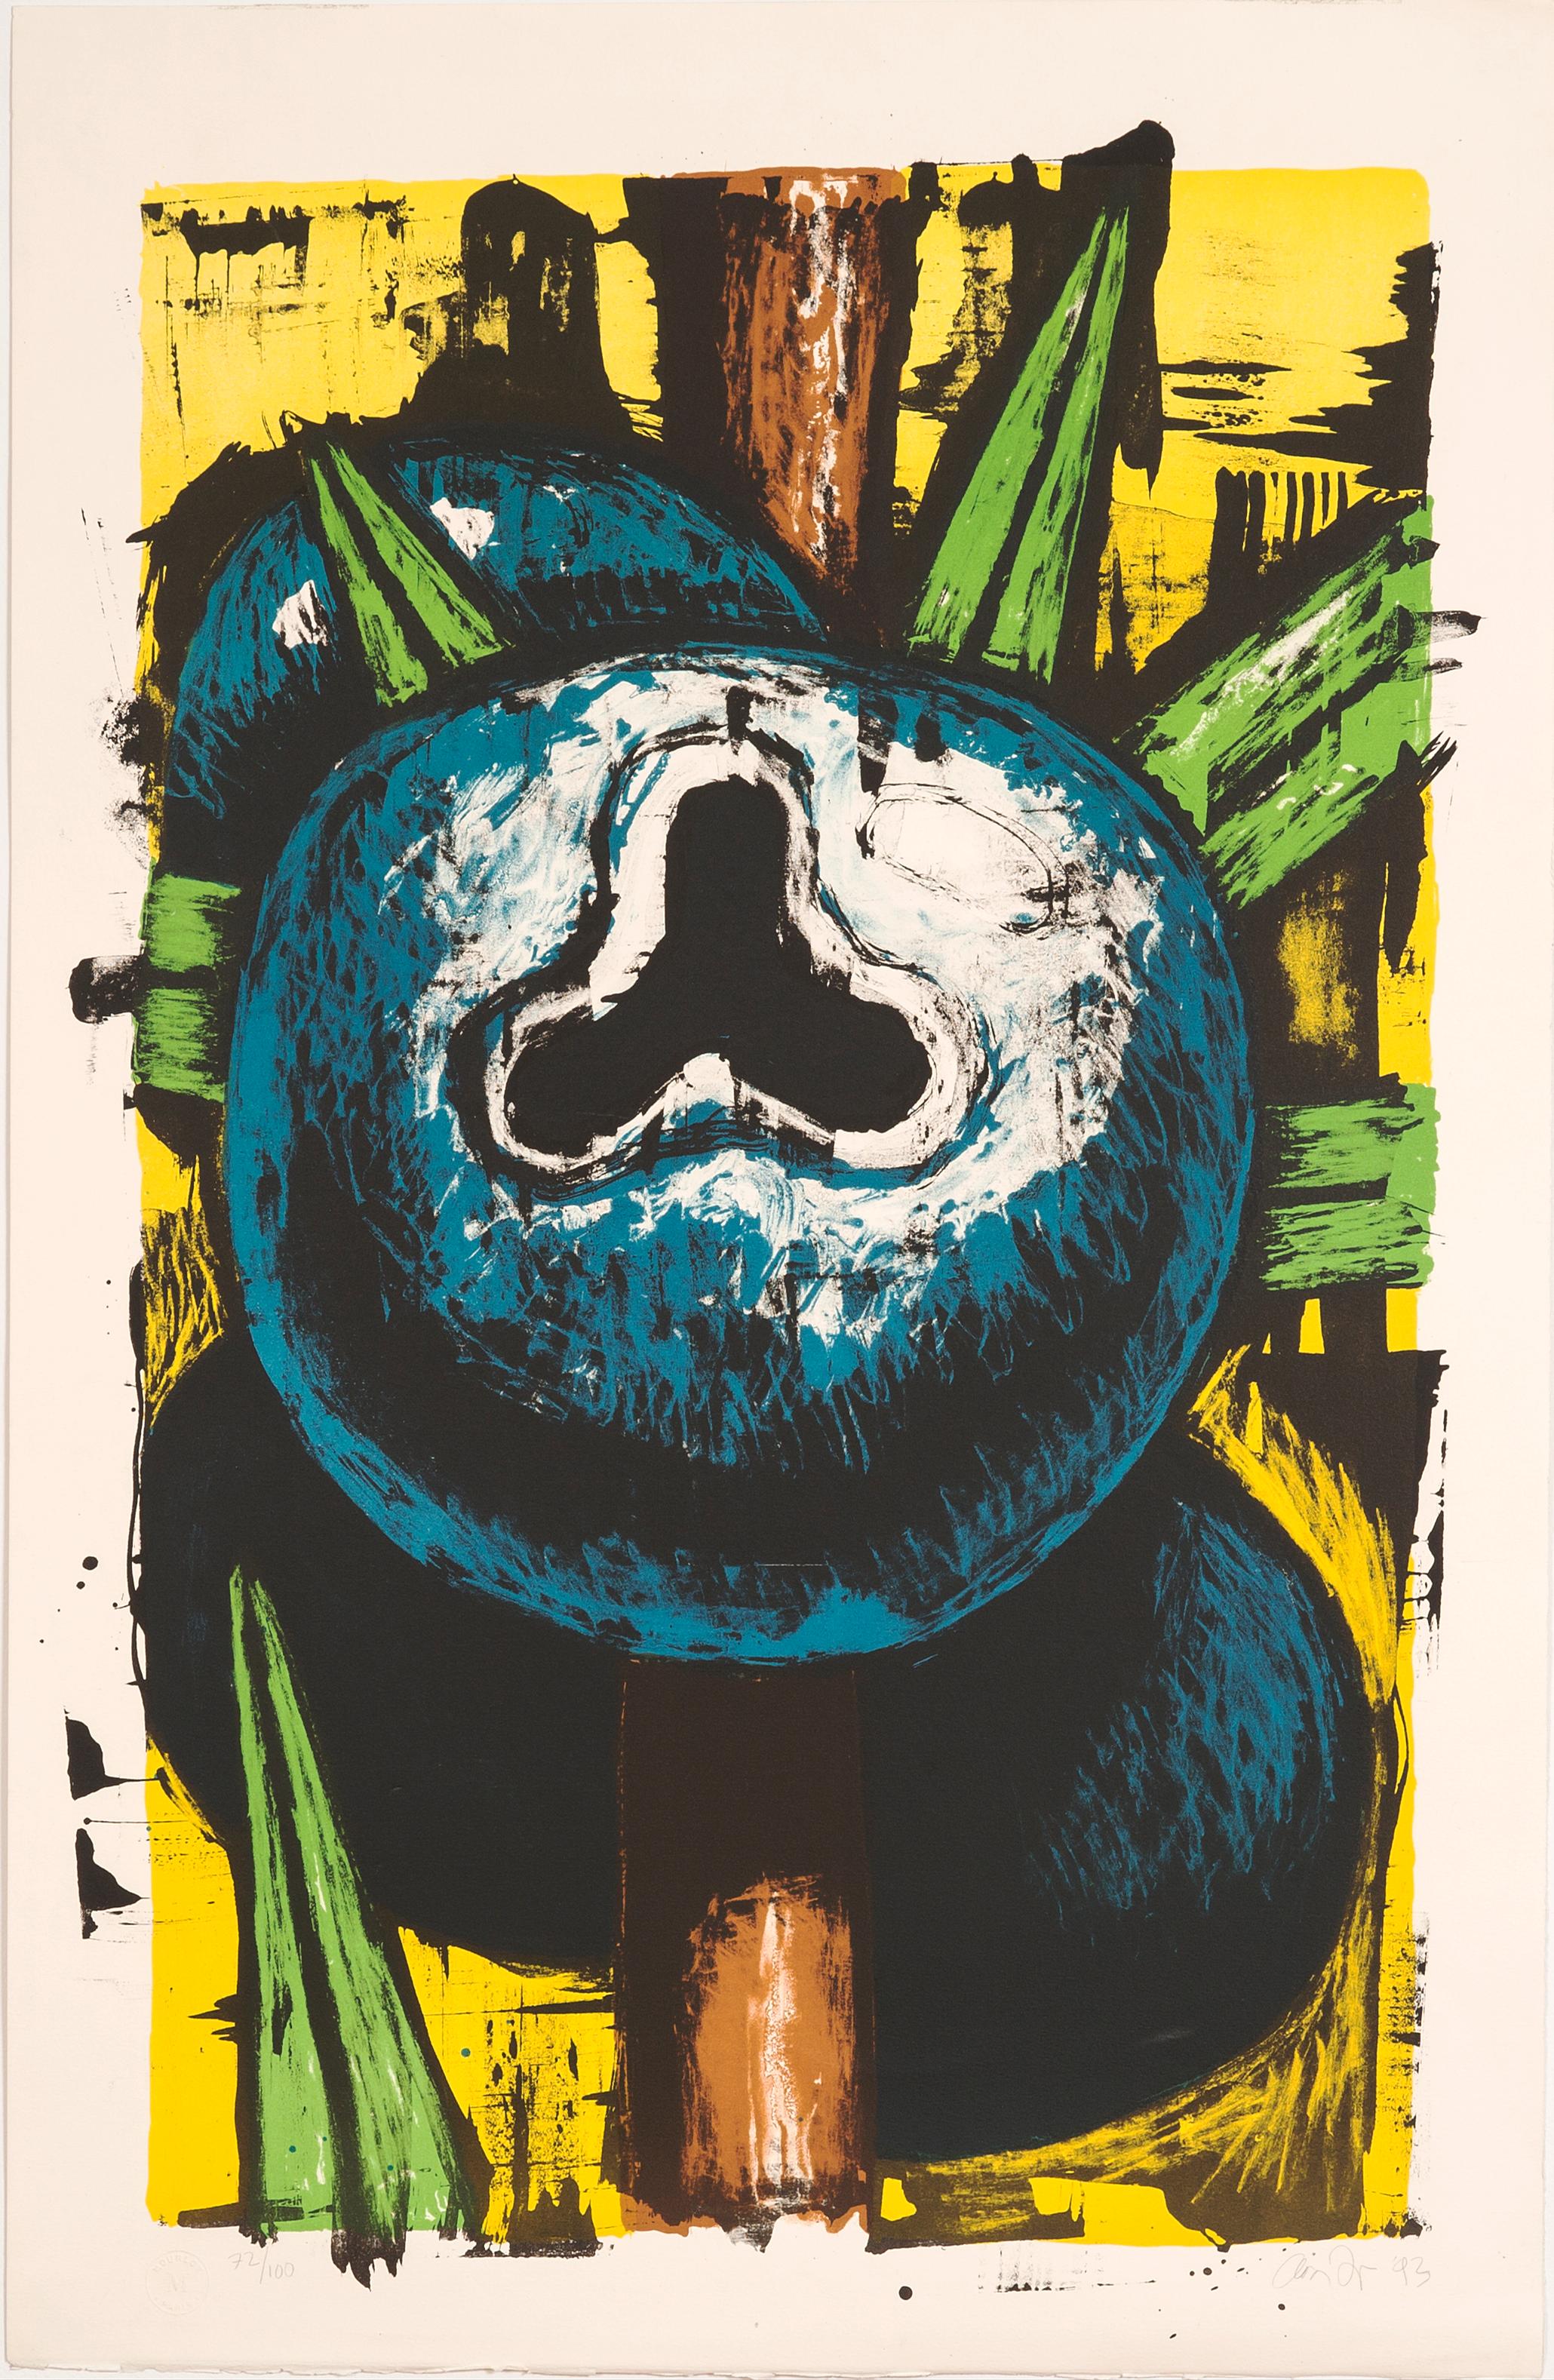 Dieses farbenfrohe Original-Stillleben, das eine Wacholderbeere darstellt, wurde 1993 in Zusammenarbeit mit Eric Mourlot in einer Auflage von 100 Stück gedruckt.

Provenienz-Zertifikat: 
Jedes einzelne, von Mourlot Editions sorgfältig kuratierte